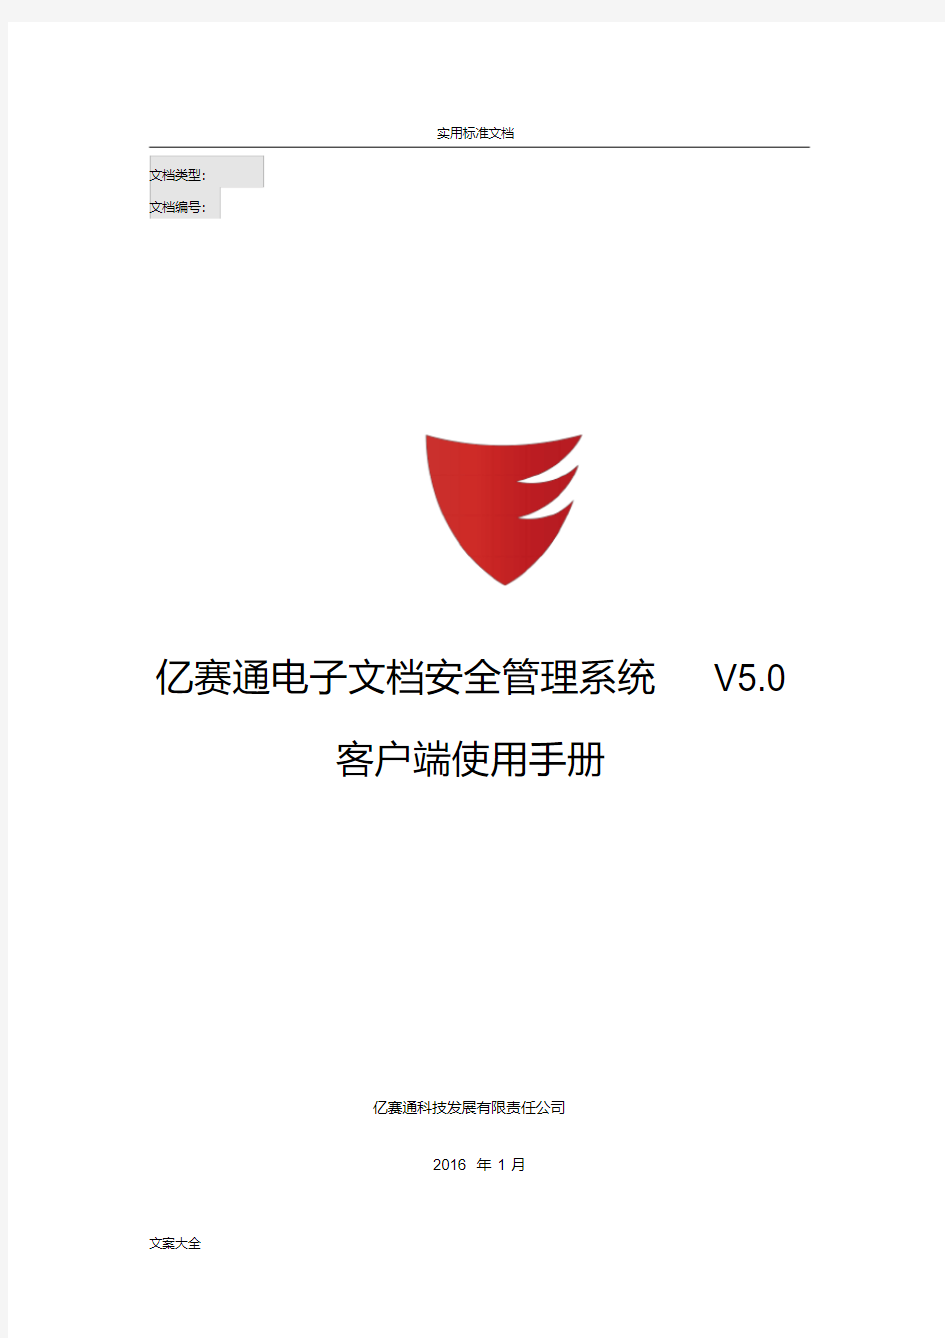 亿赛通电子文档安全系统管理系统V5.0--客户端使用手册簿V11